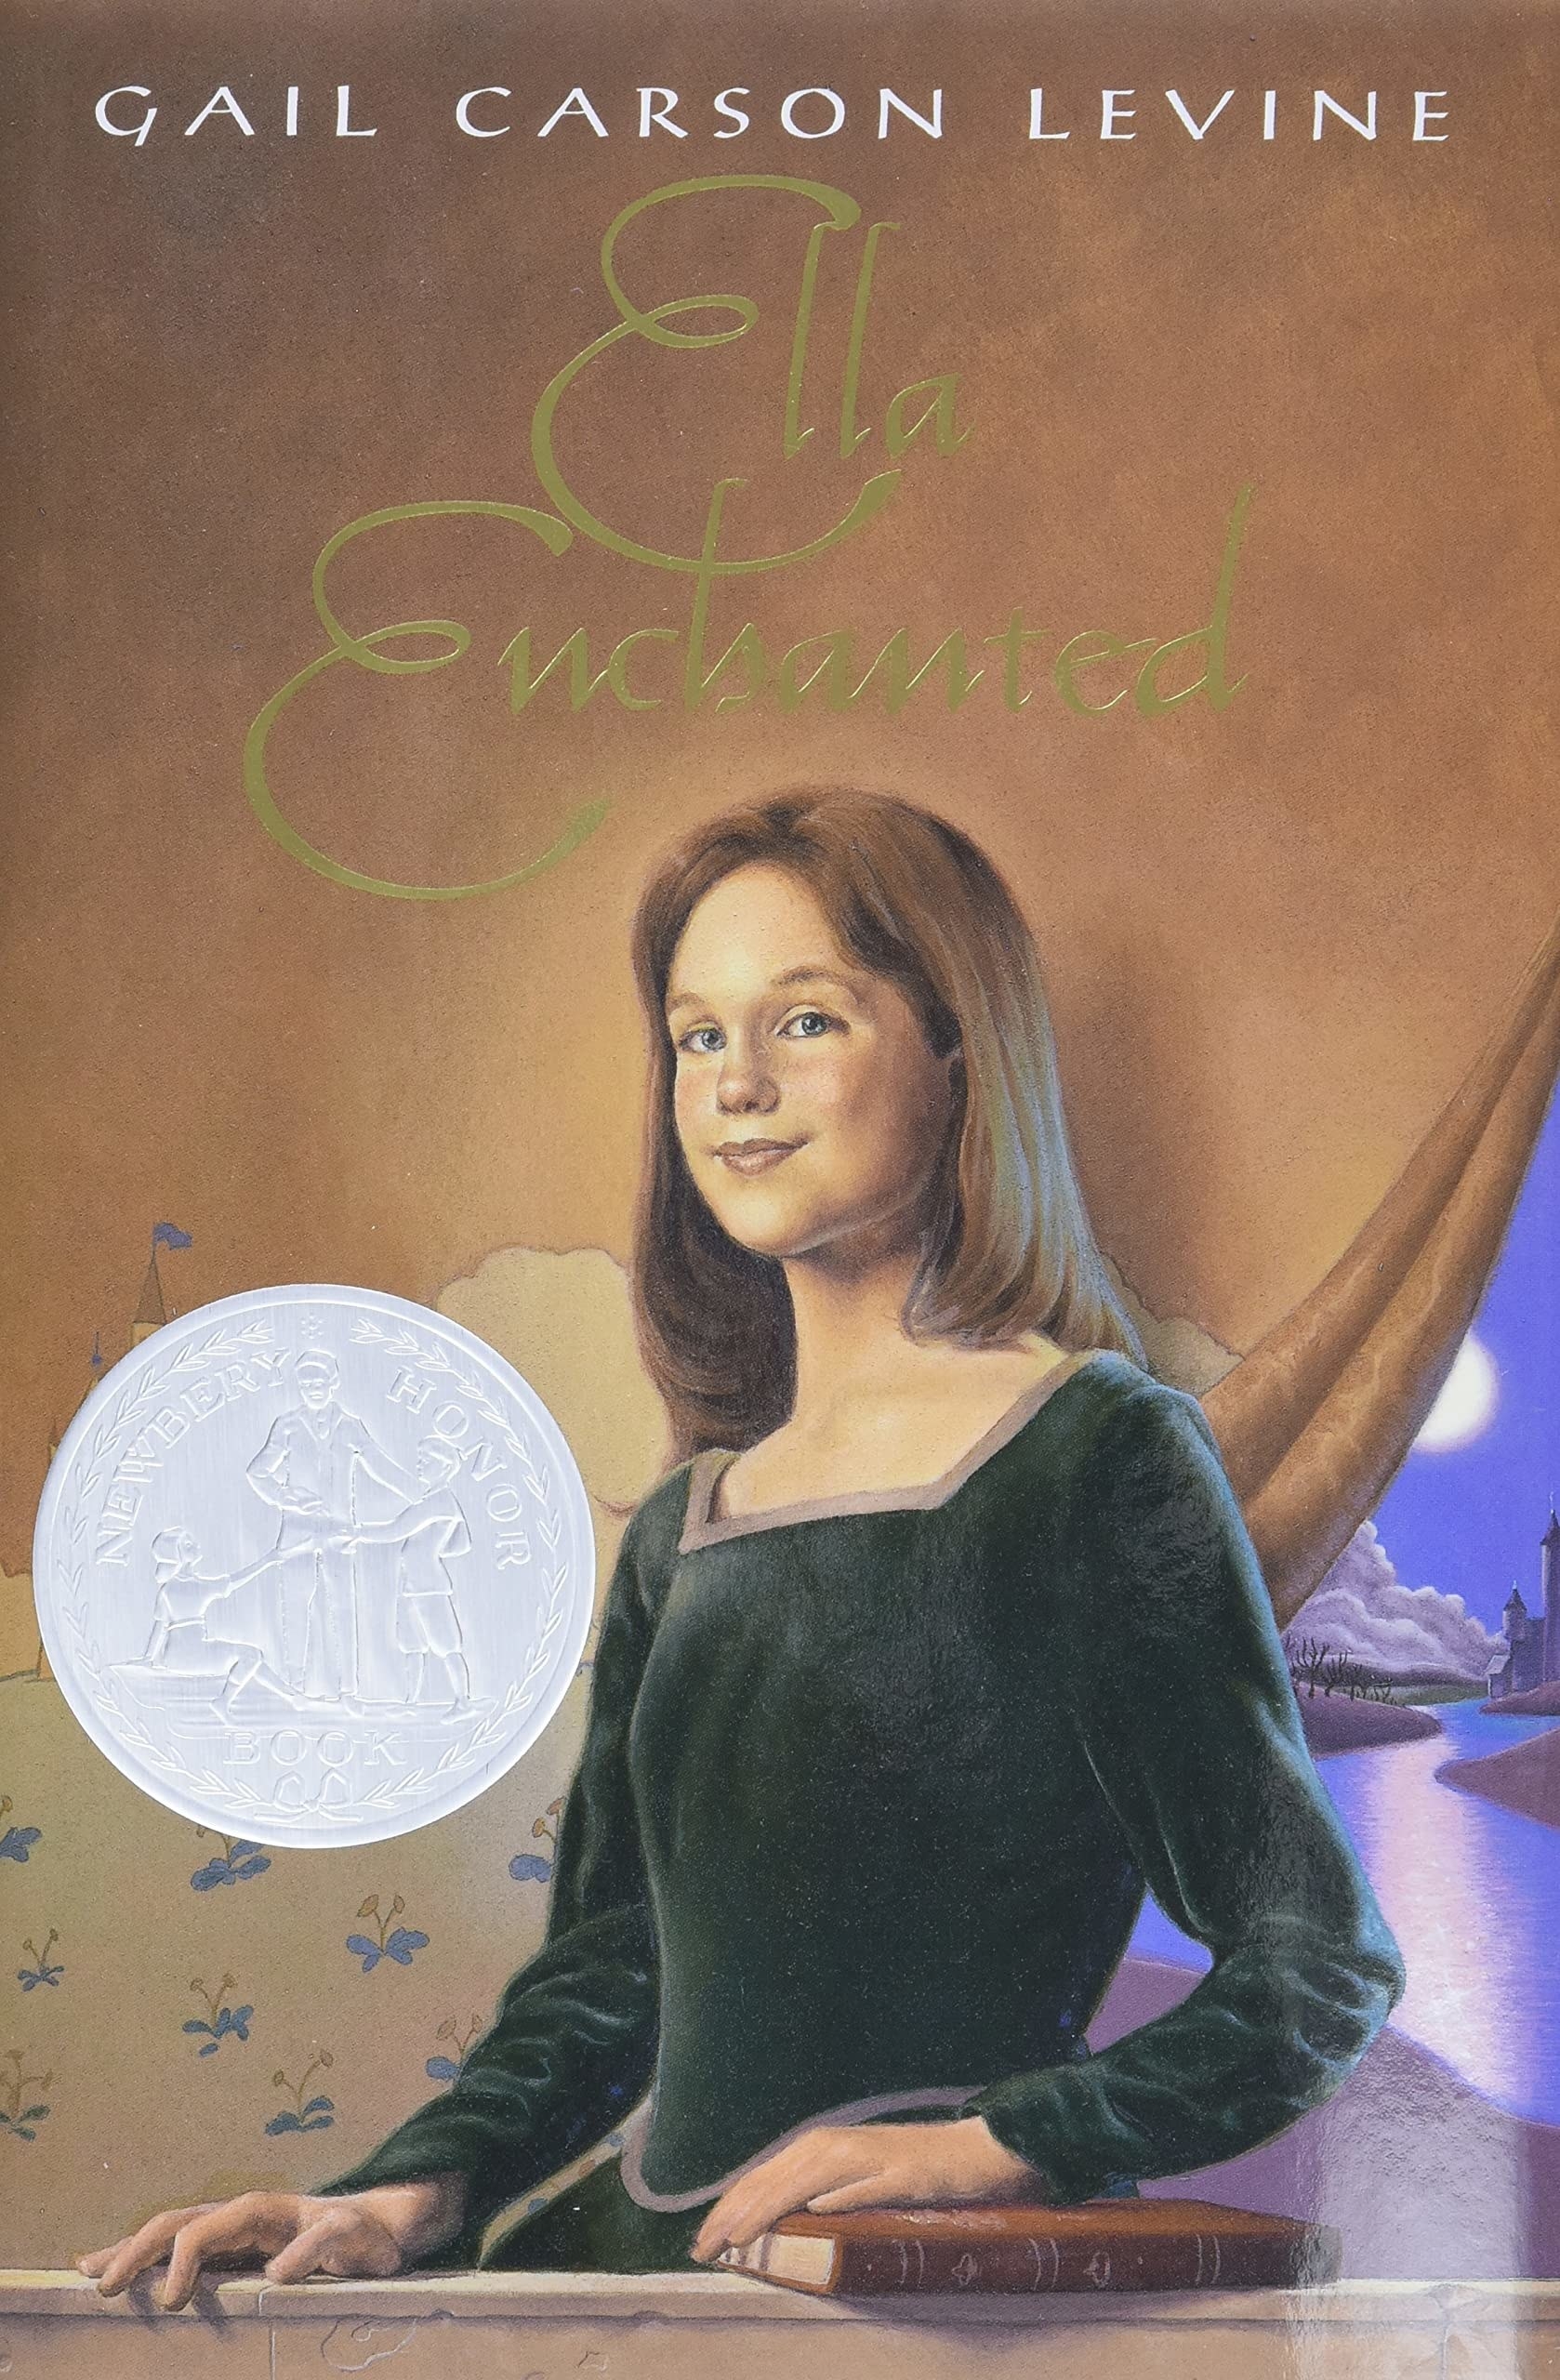 Ella Enchanted book cover